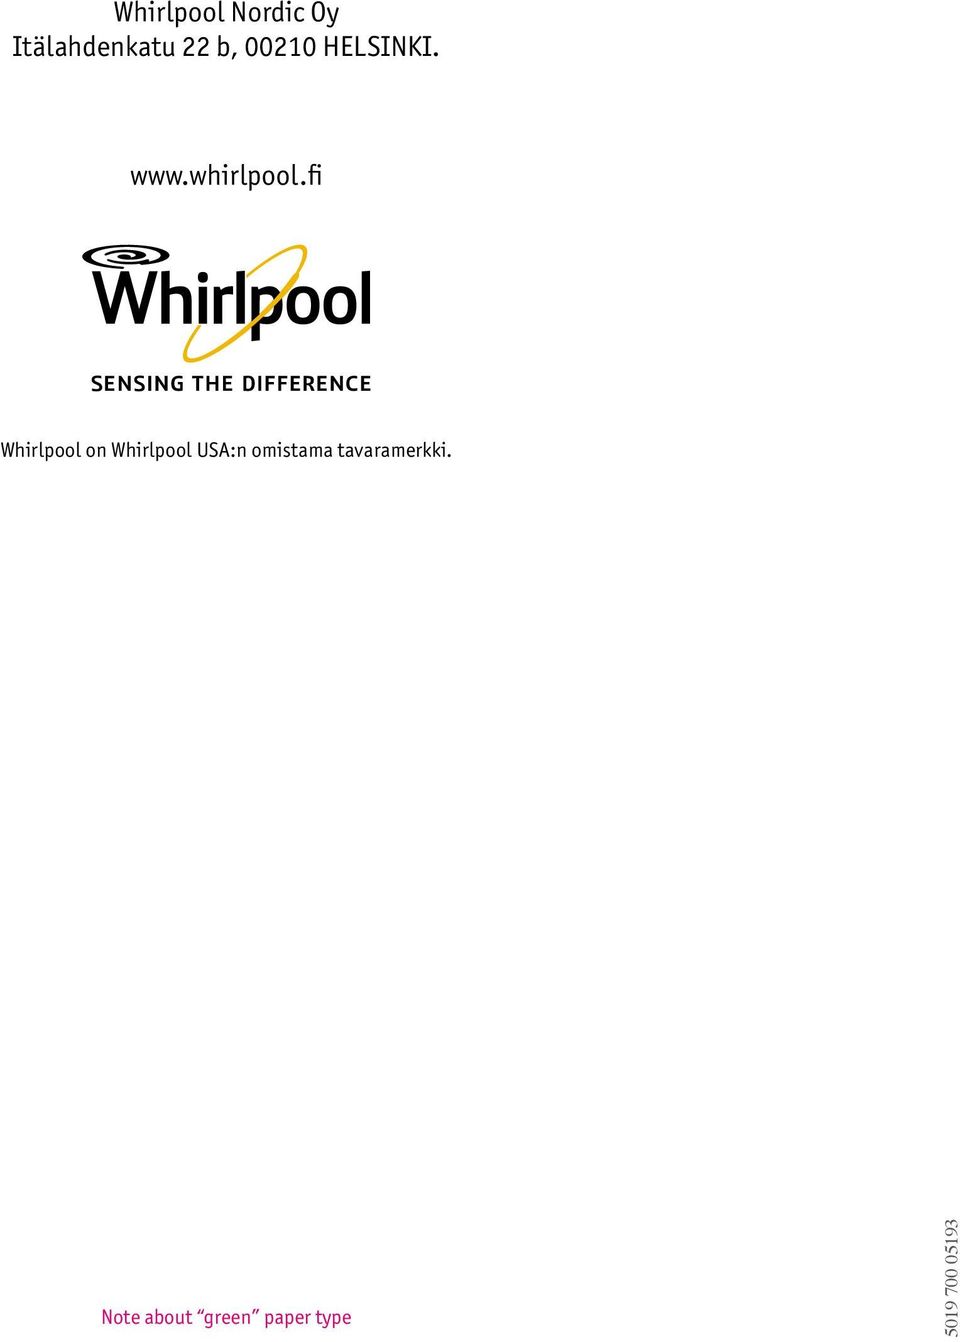 fi Whirlpool on Whirlpool USA:n omistama